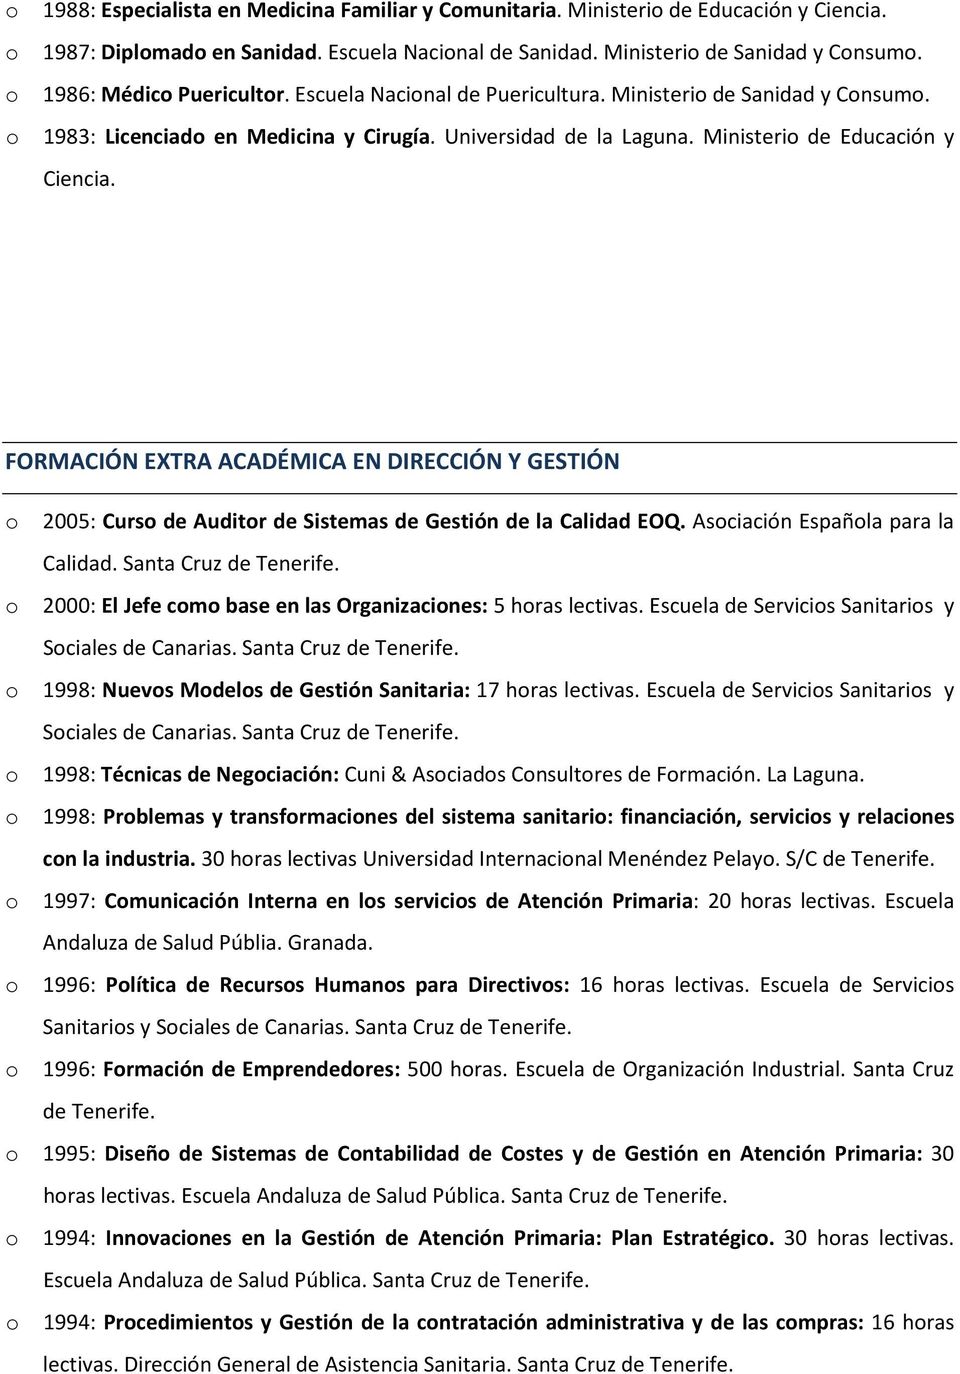 FORMACIÓN EXTRA ACADÉMICA EN DIRECCIÓN Y GESTIÓN 2005: Curs de Auditr de Sistemas de Gestión de la Calidad EOQ. Asciación Españla para la Calidad. Santa Cruz de Tenerife.